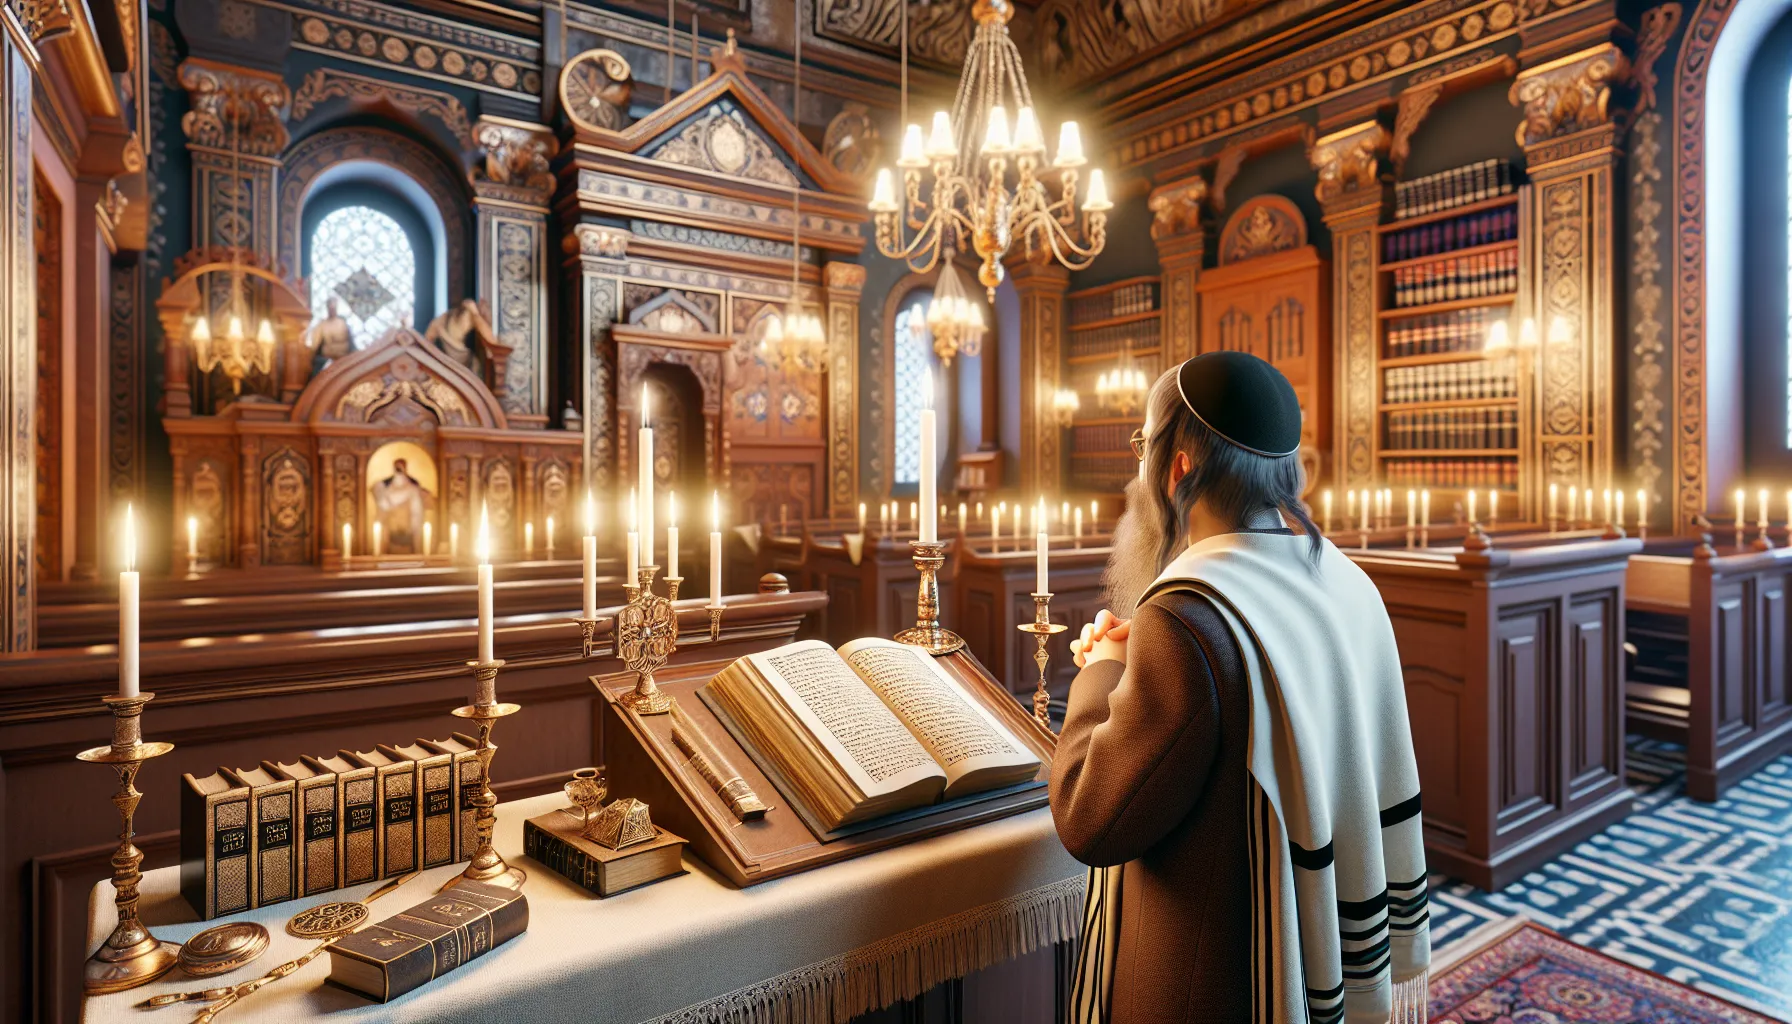 Persona judía practicando rituales religiosos en una sinagoga ortodoxa.